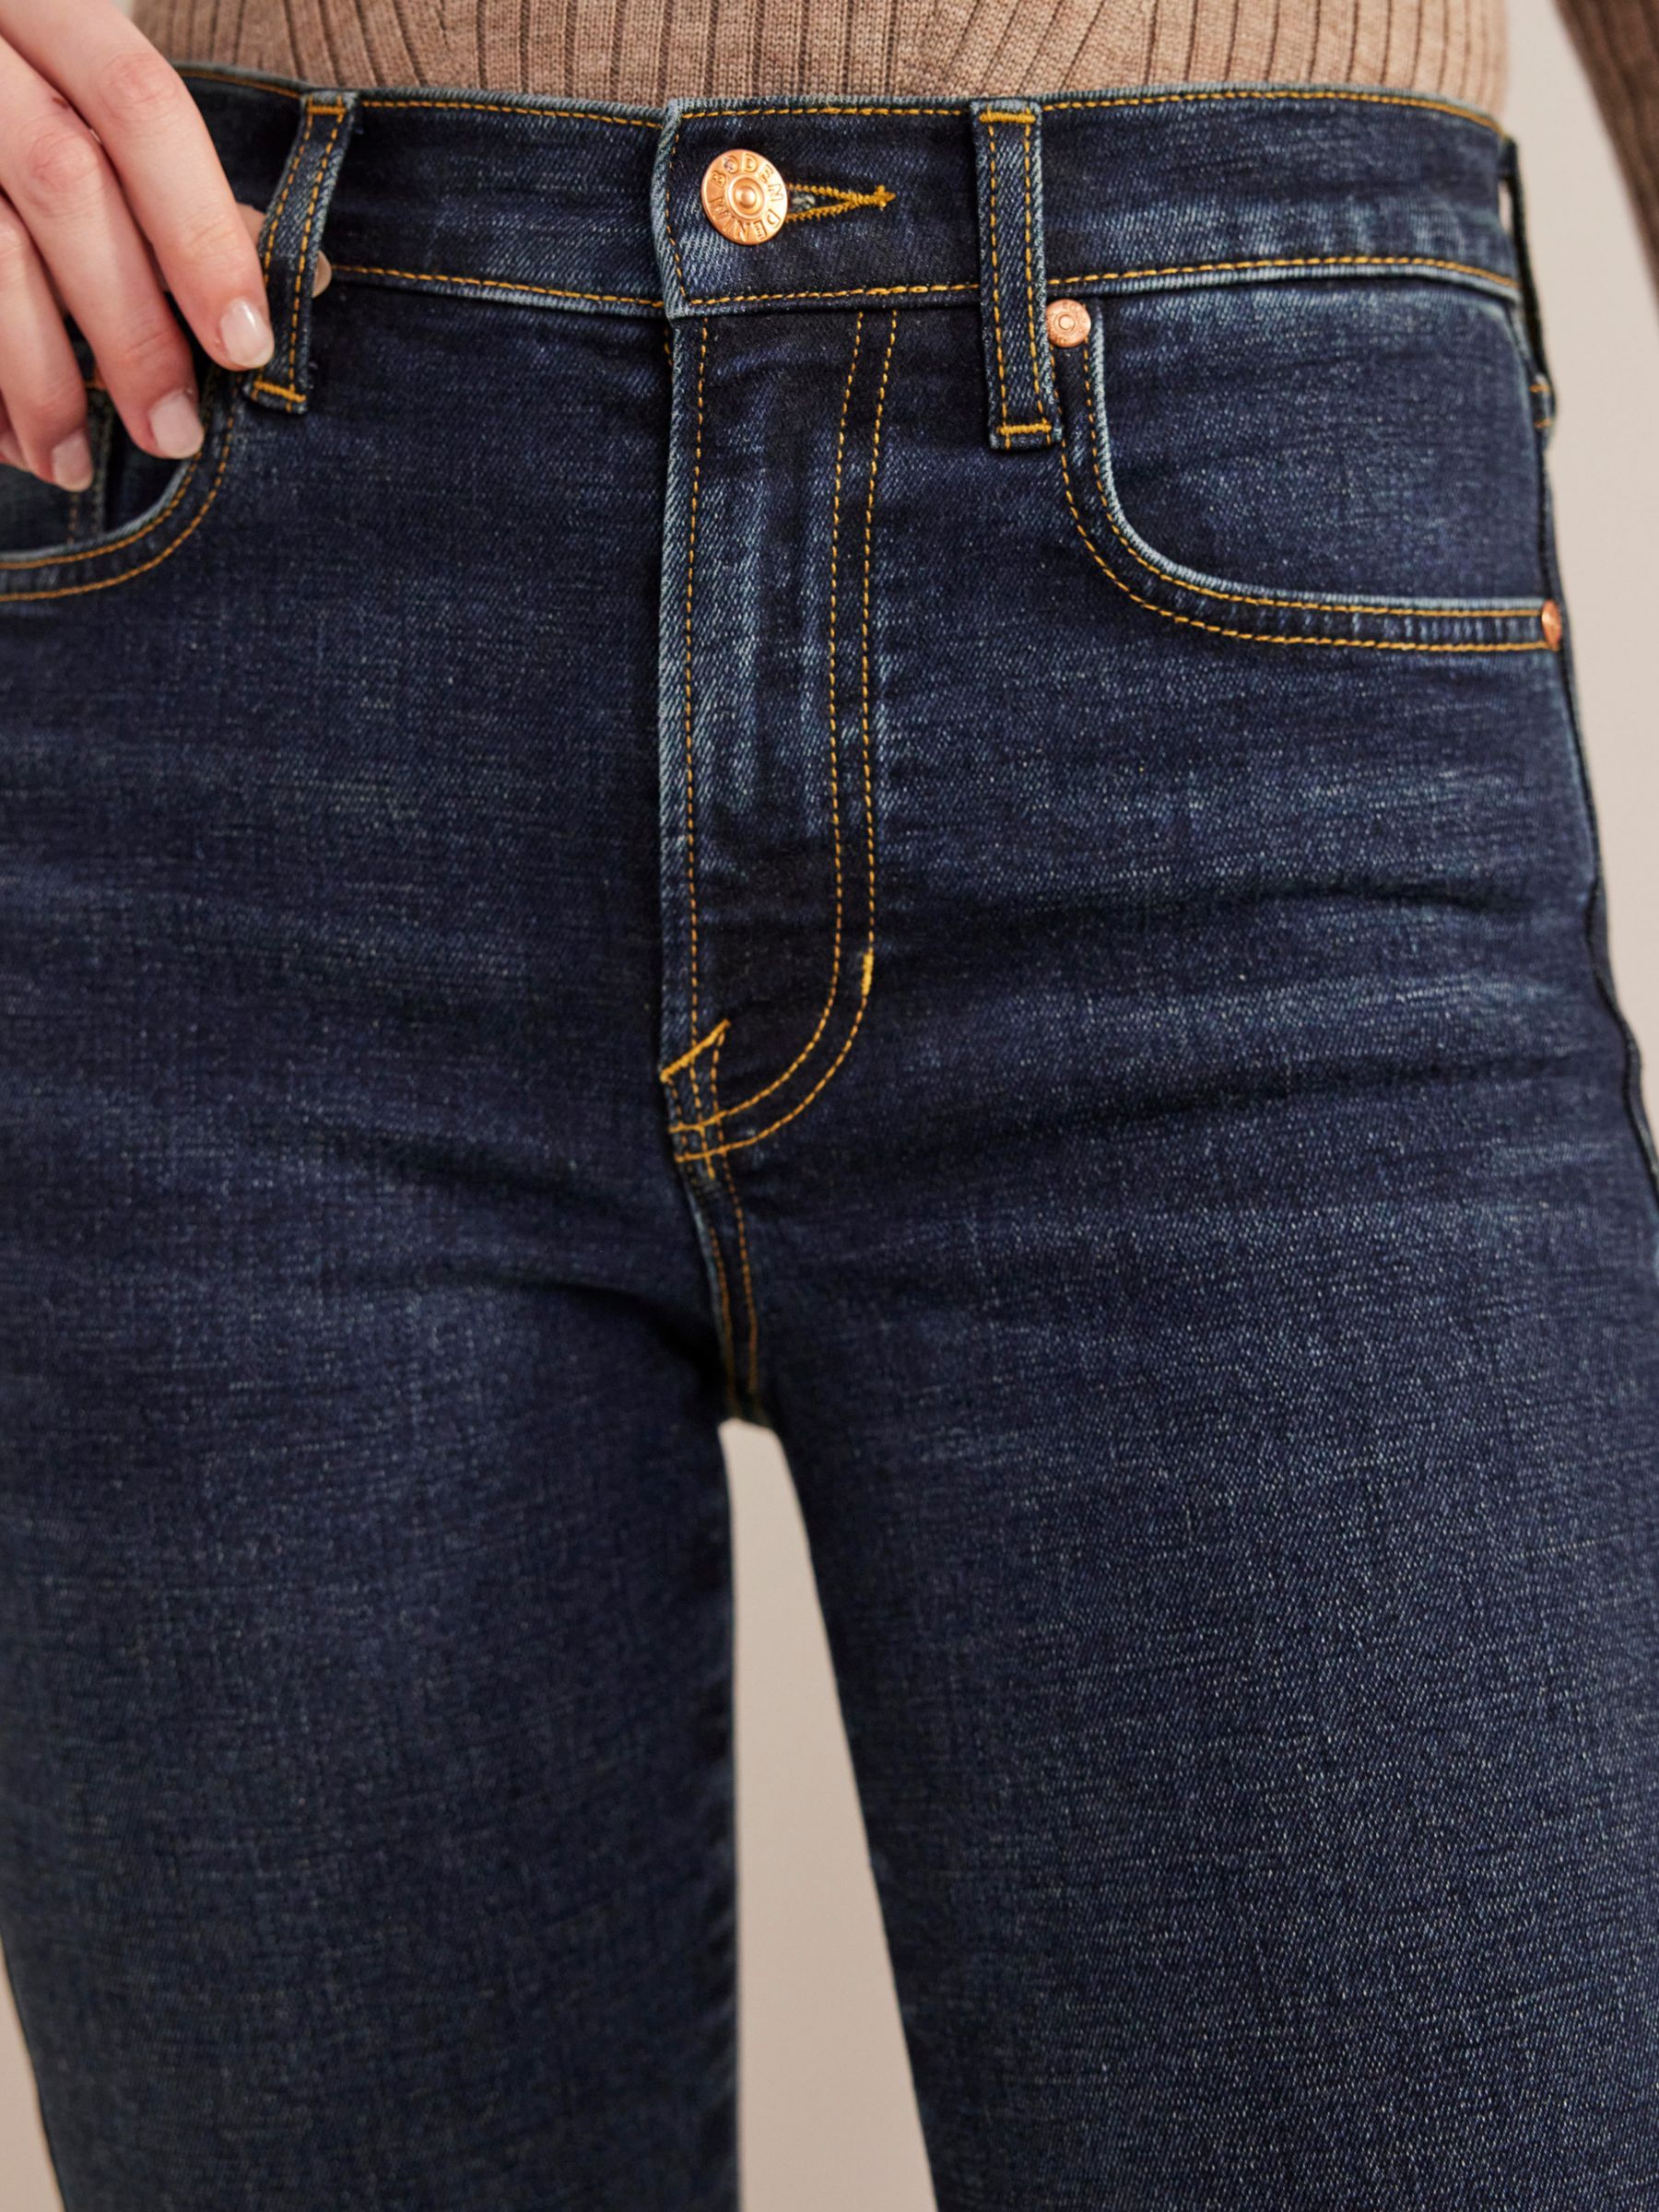 Boden Mid Rise Slim Fit Cigarette Jeans, Indigo Wash, W32/L32